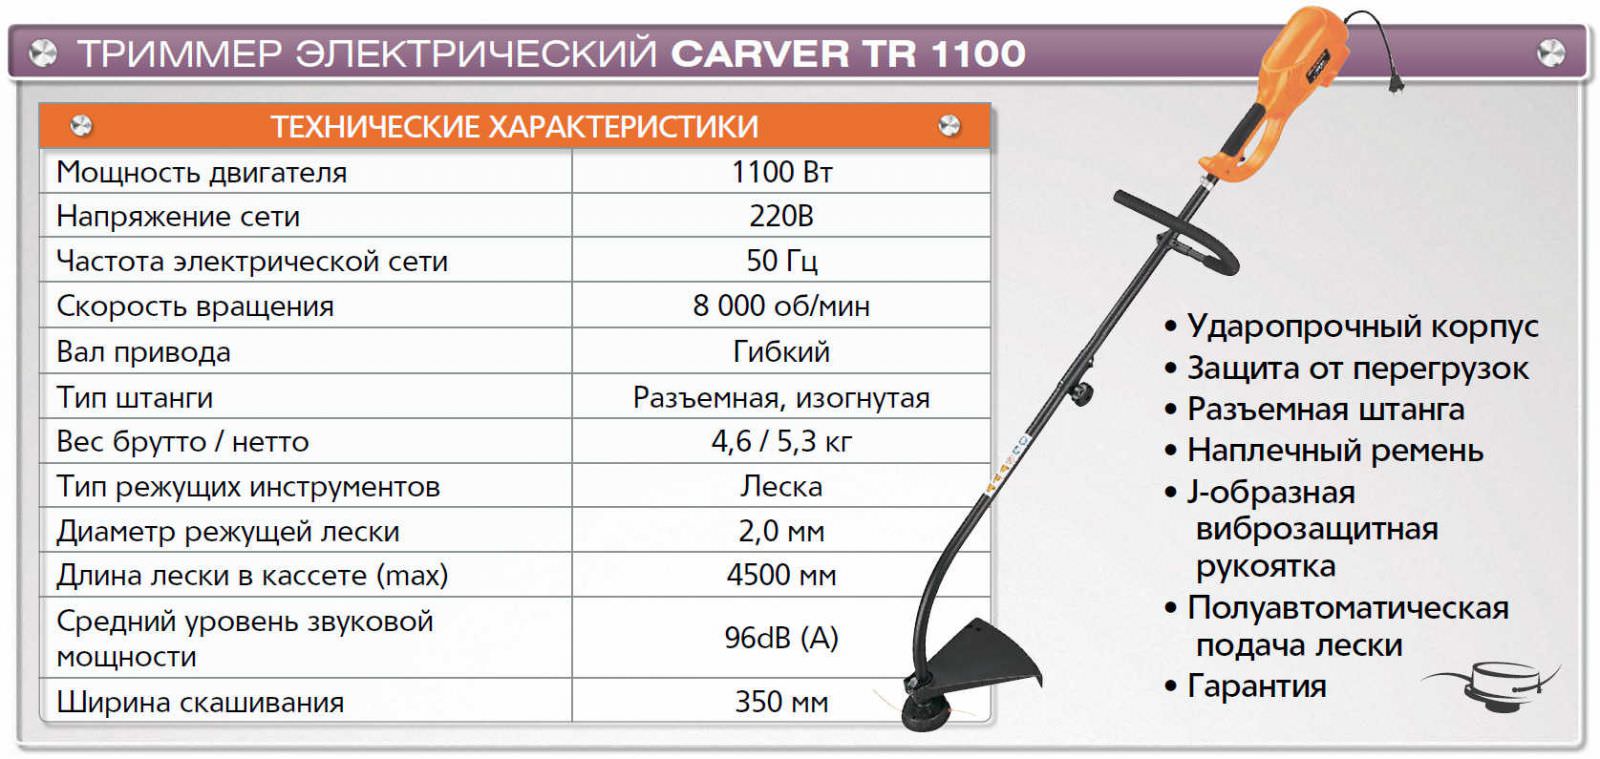 CARVER TR-1100